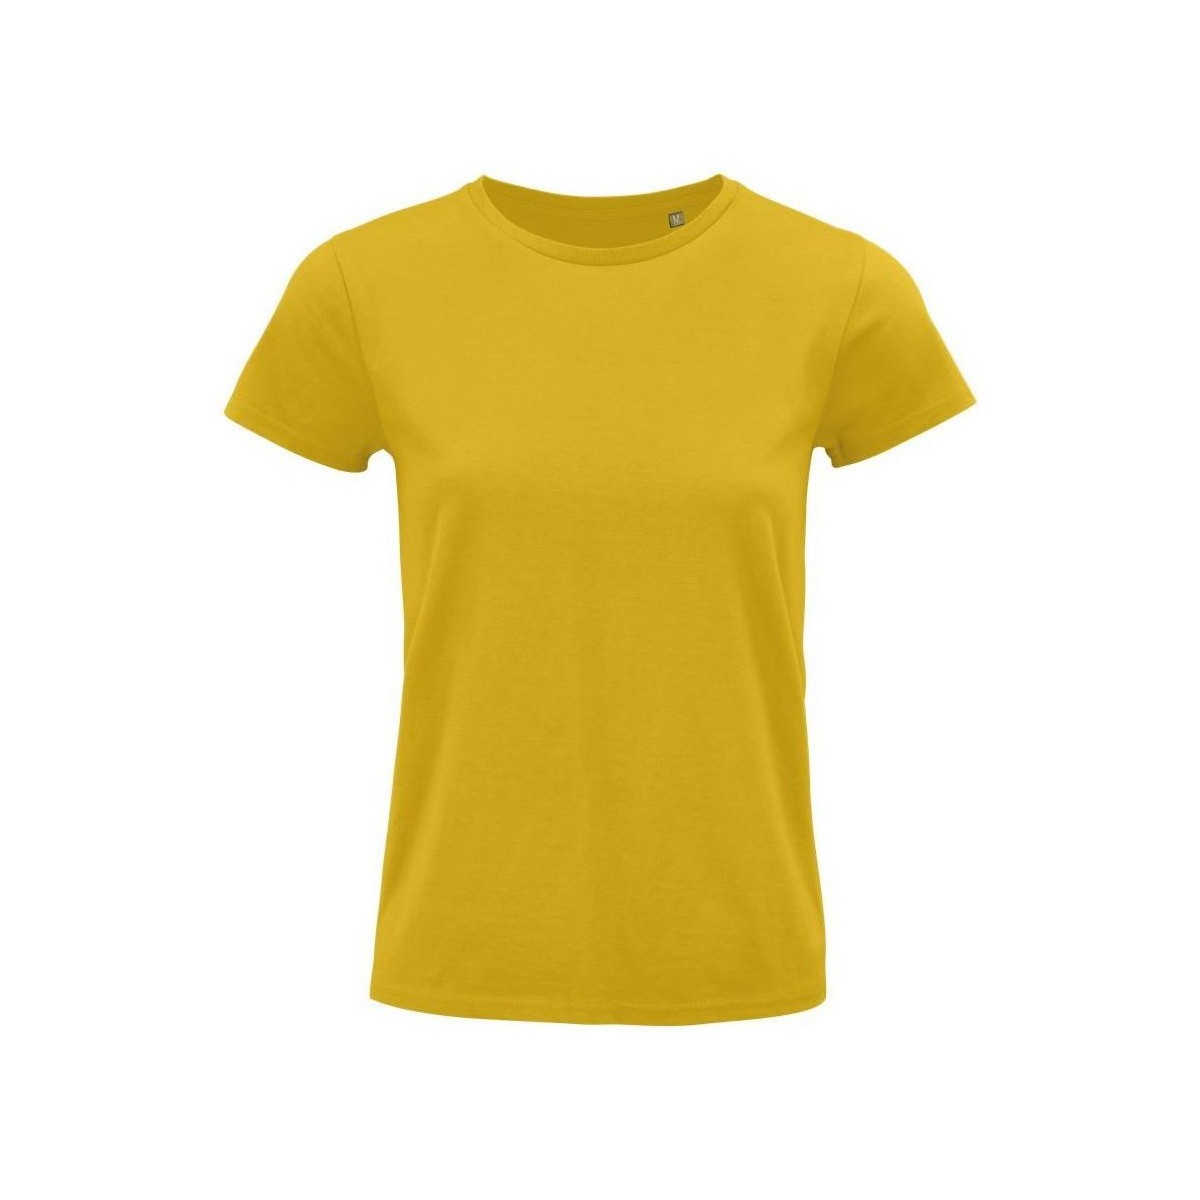 Textil Mulher T-shirts e Pólos Sols PIONNER WOMEN Amarelo